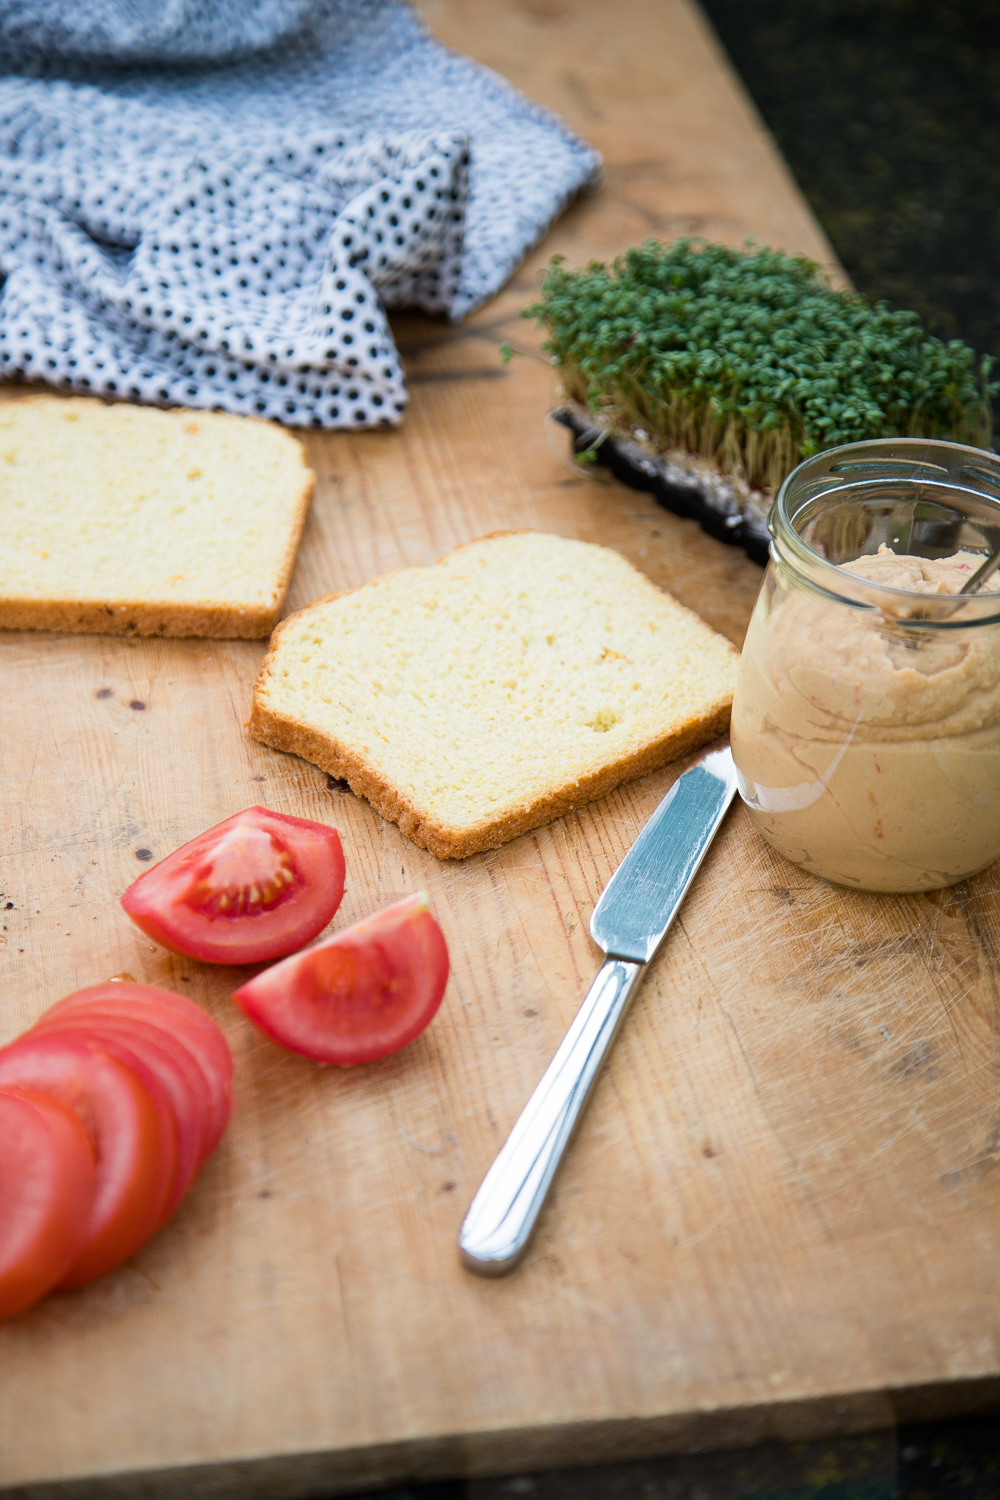 Super leckere belegte Brote mit einem einfachen und gesundem Kichererbsenaufstrich, den man auch für ein paar Tage im Kühlschrank aufbewahren kann.